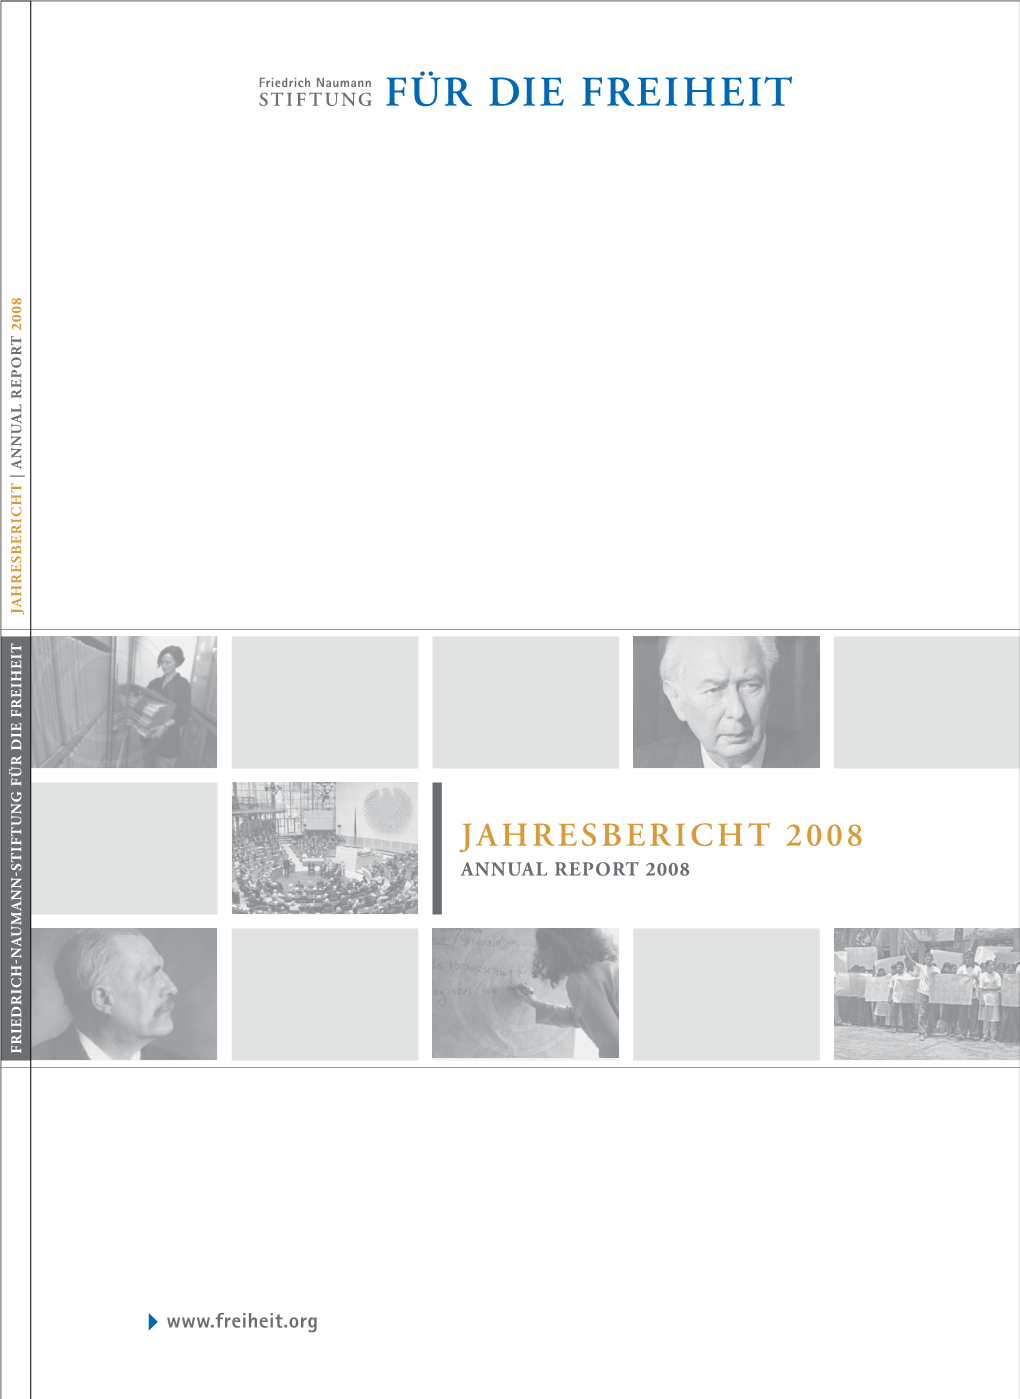 Jahresbericht 2008 2008 Jahresbericht Report 2008